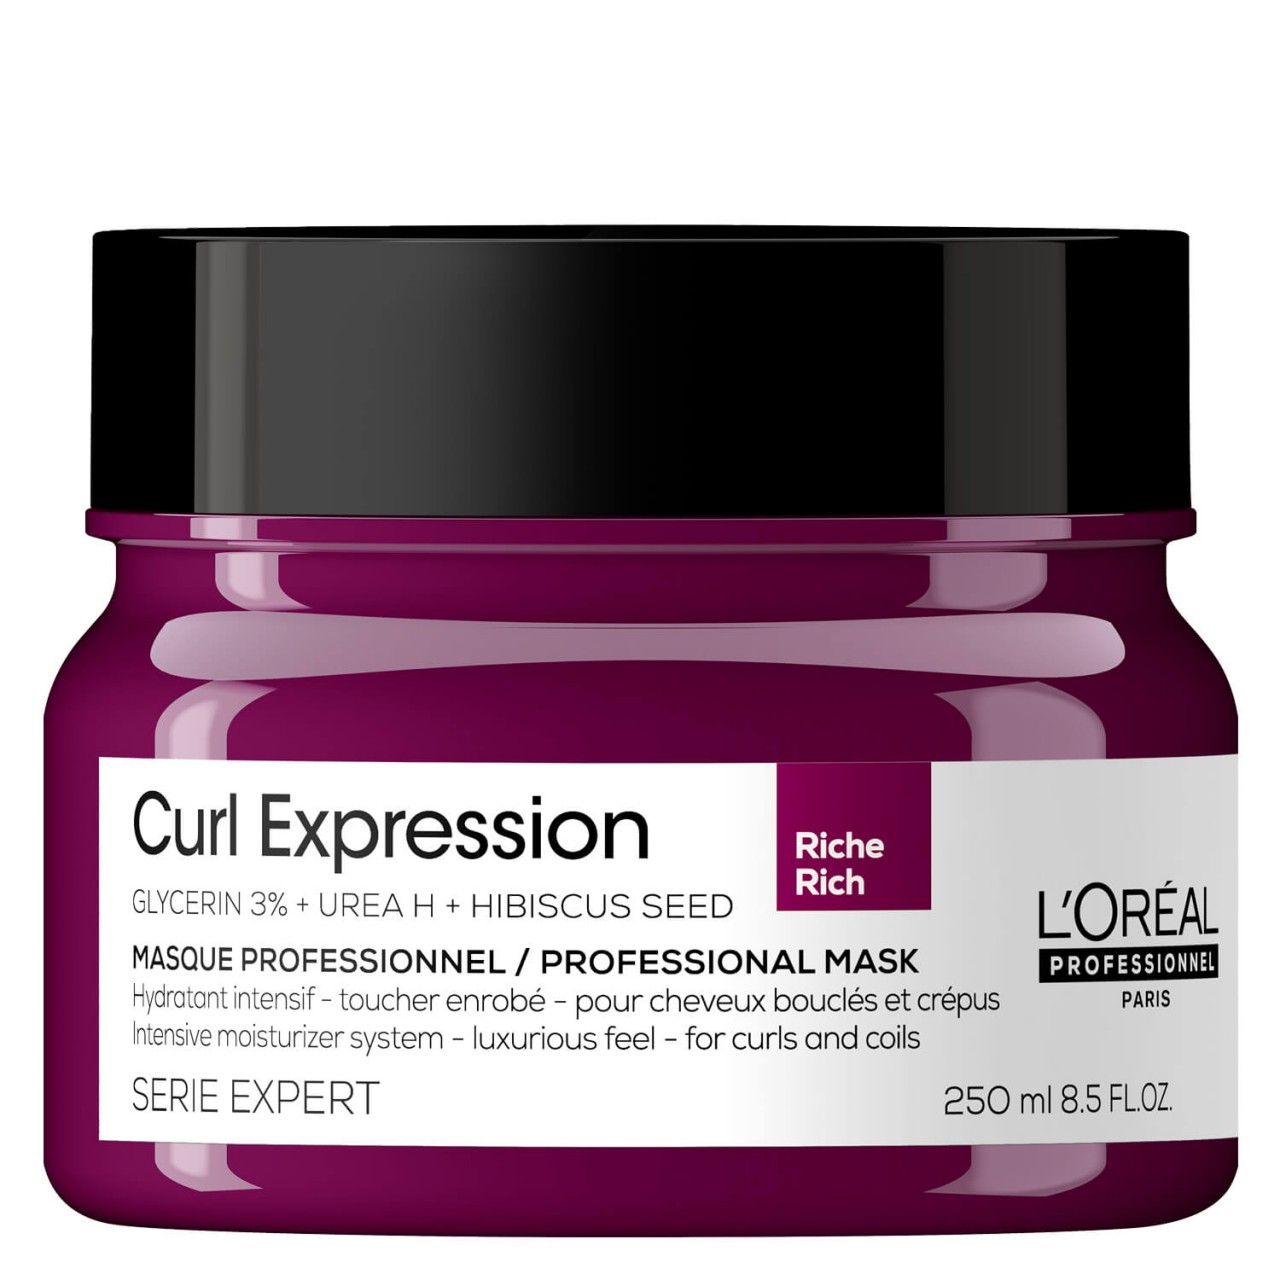 Série Expert Curl Expression - Intensive Moisturizer Rich Mask von L'Oréal Professionnel